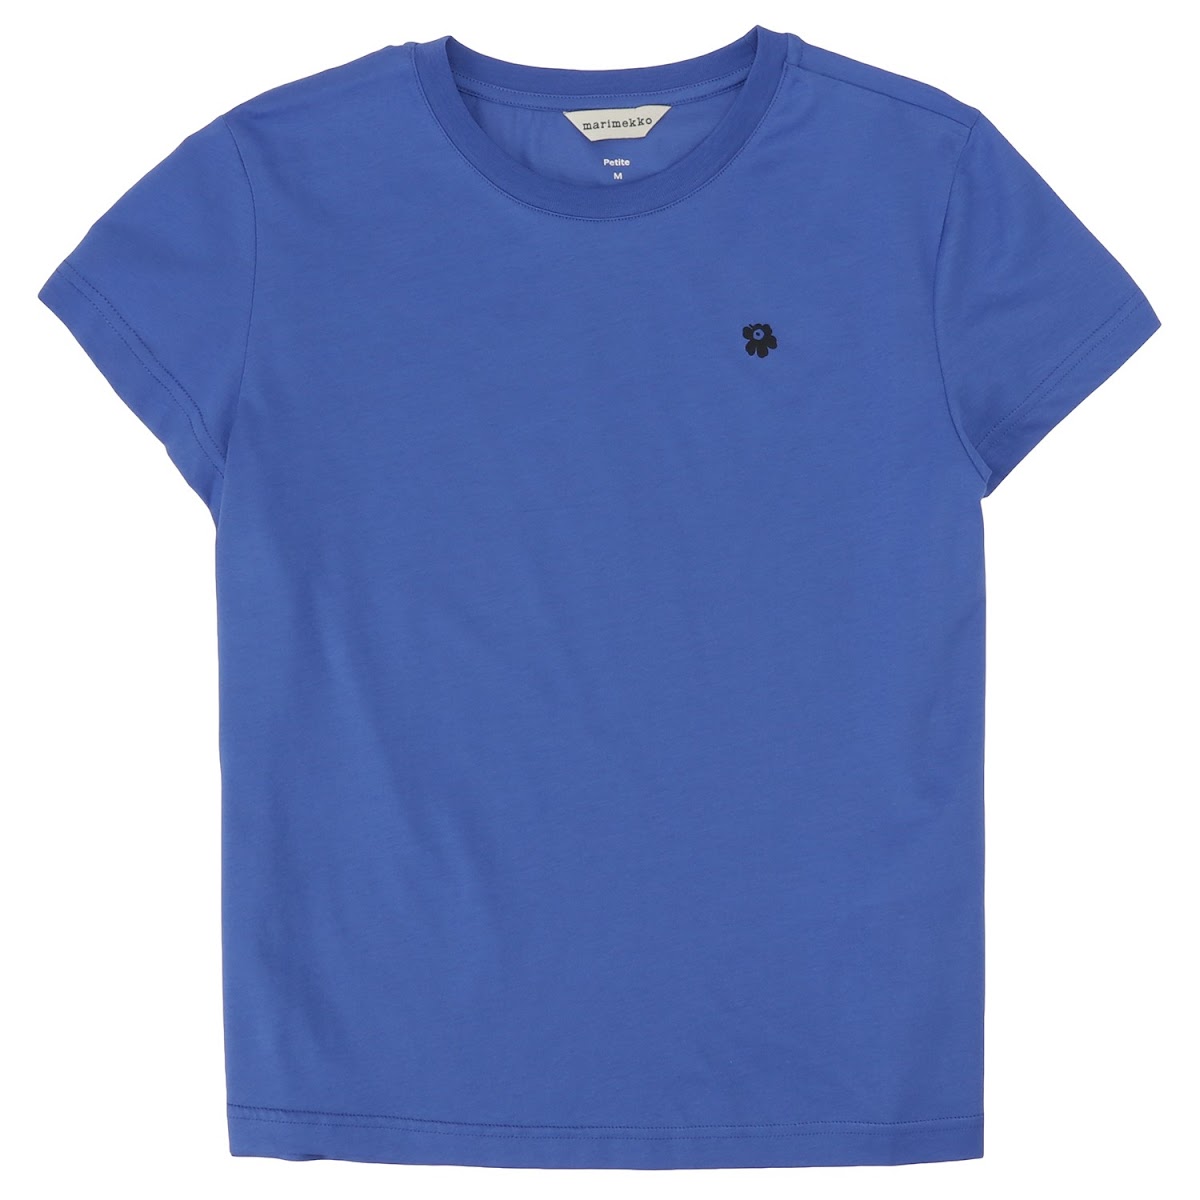 マリメッコ MARIMEKKO / Silla Unikko Placement T-Shirt Tシャツ Sサイズ #091121 590 S